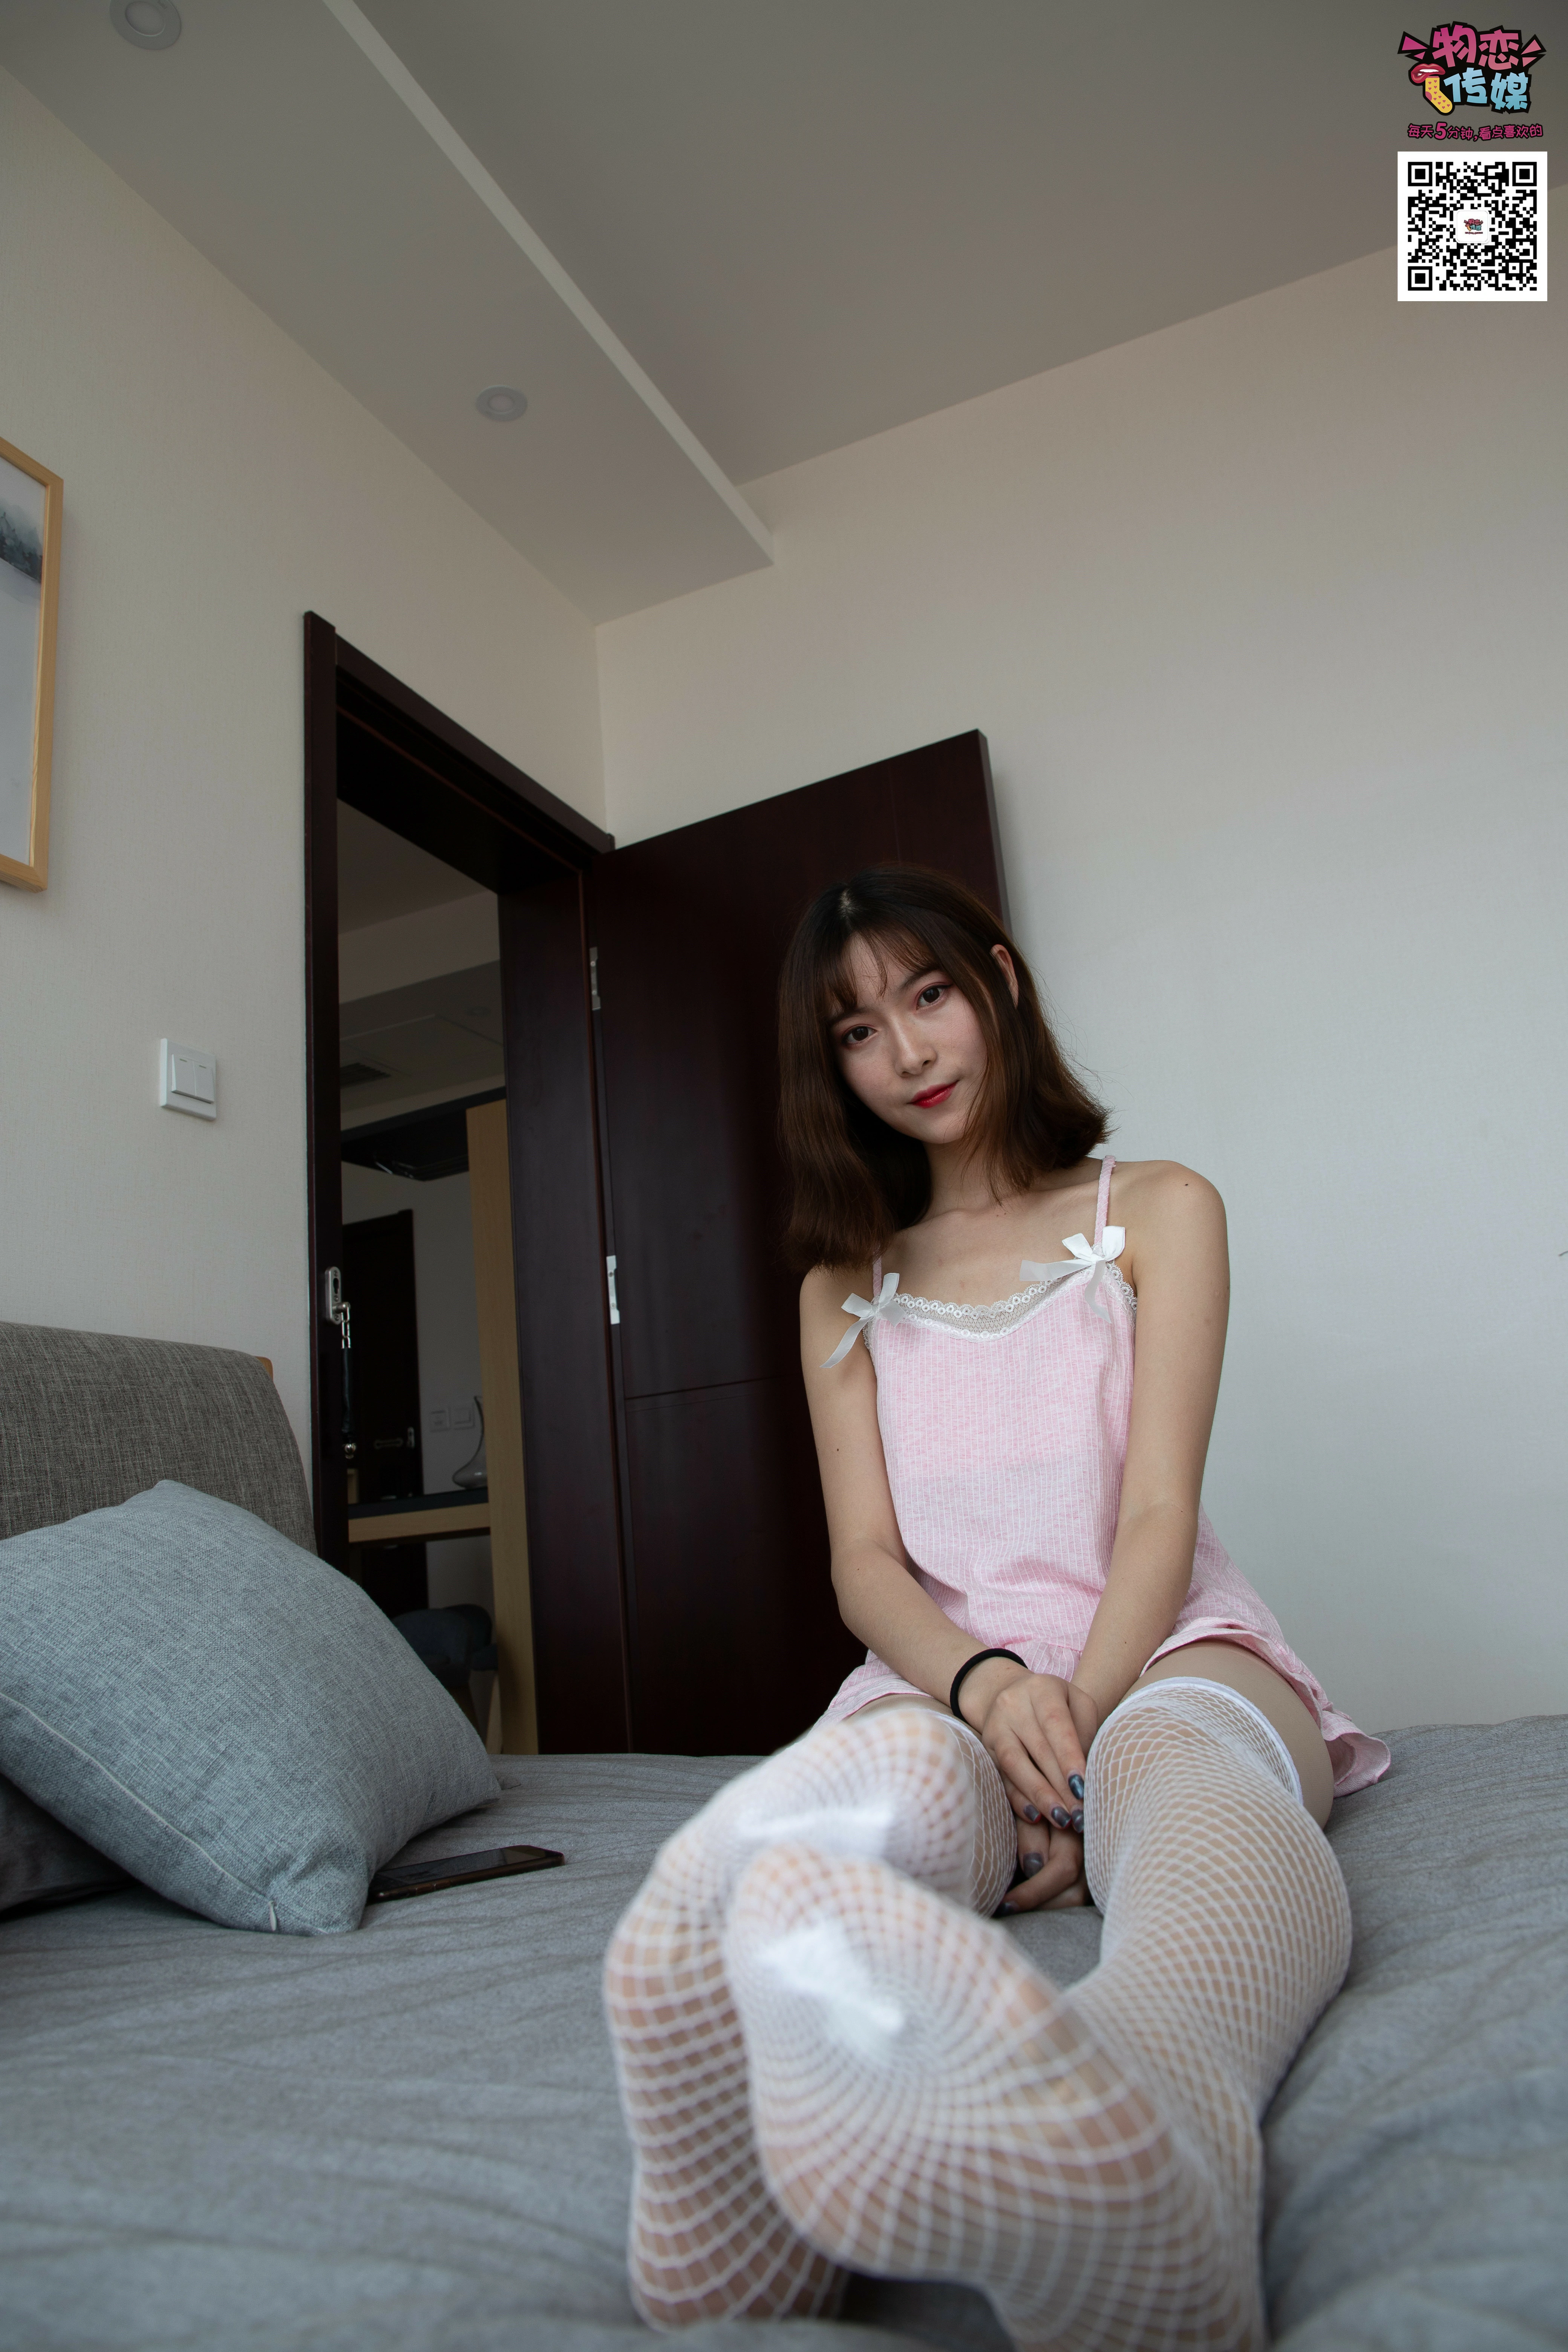 [物恋传媒]NO.020 居家清纯少女粉色睡衣与短裤加肉丝美腿性感写真,0008